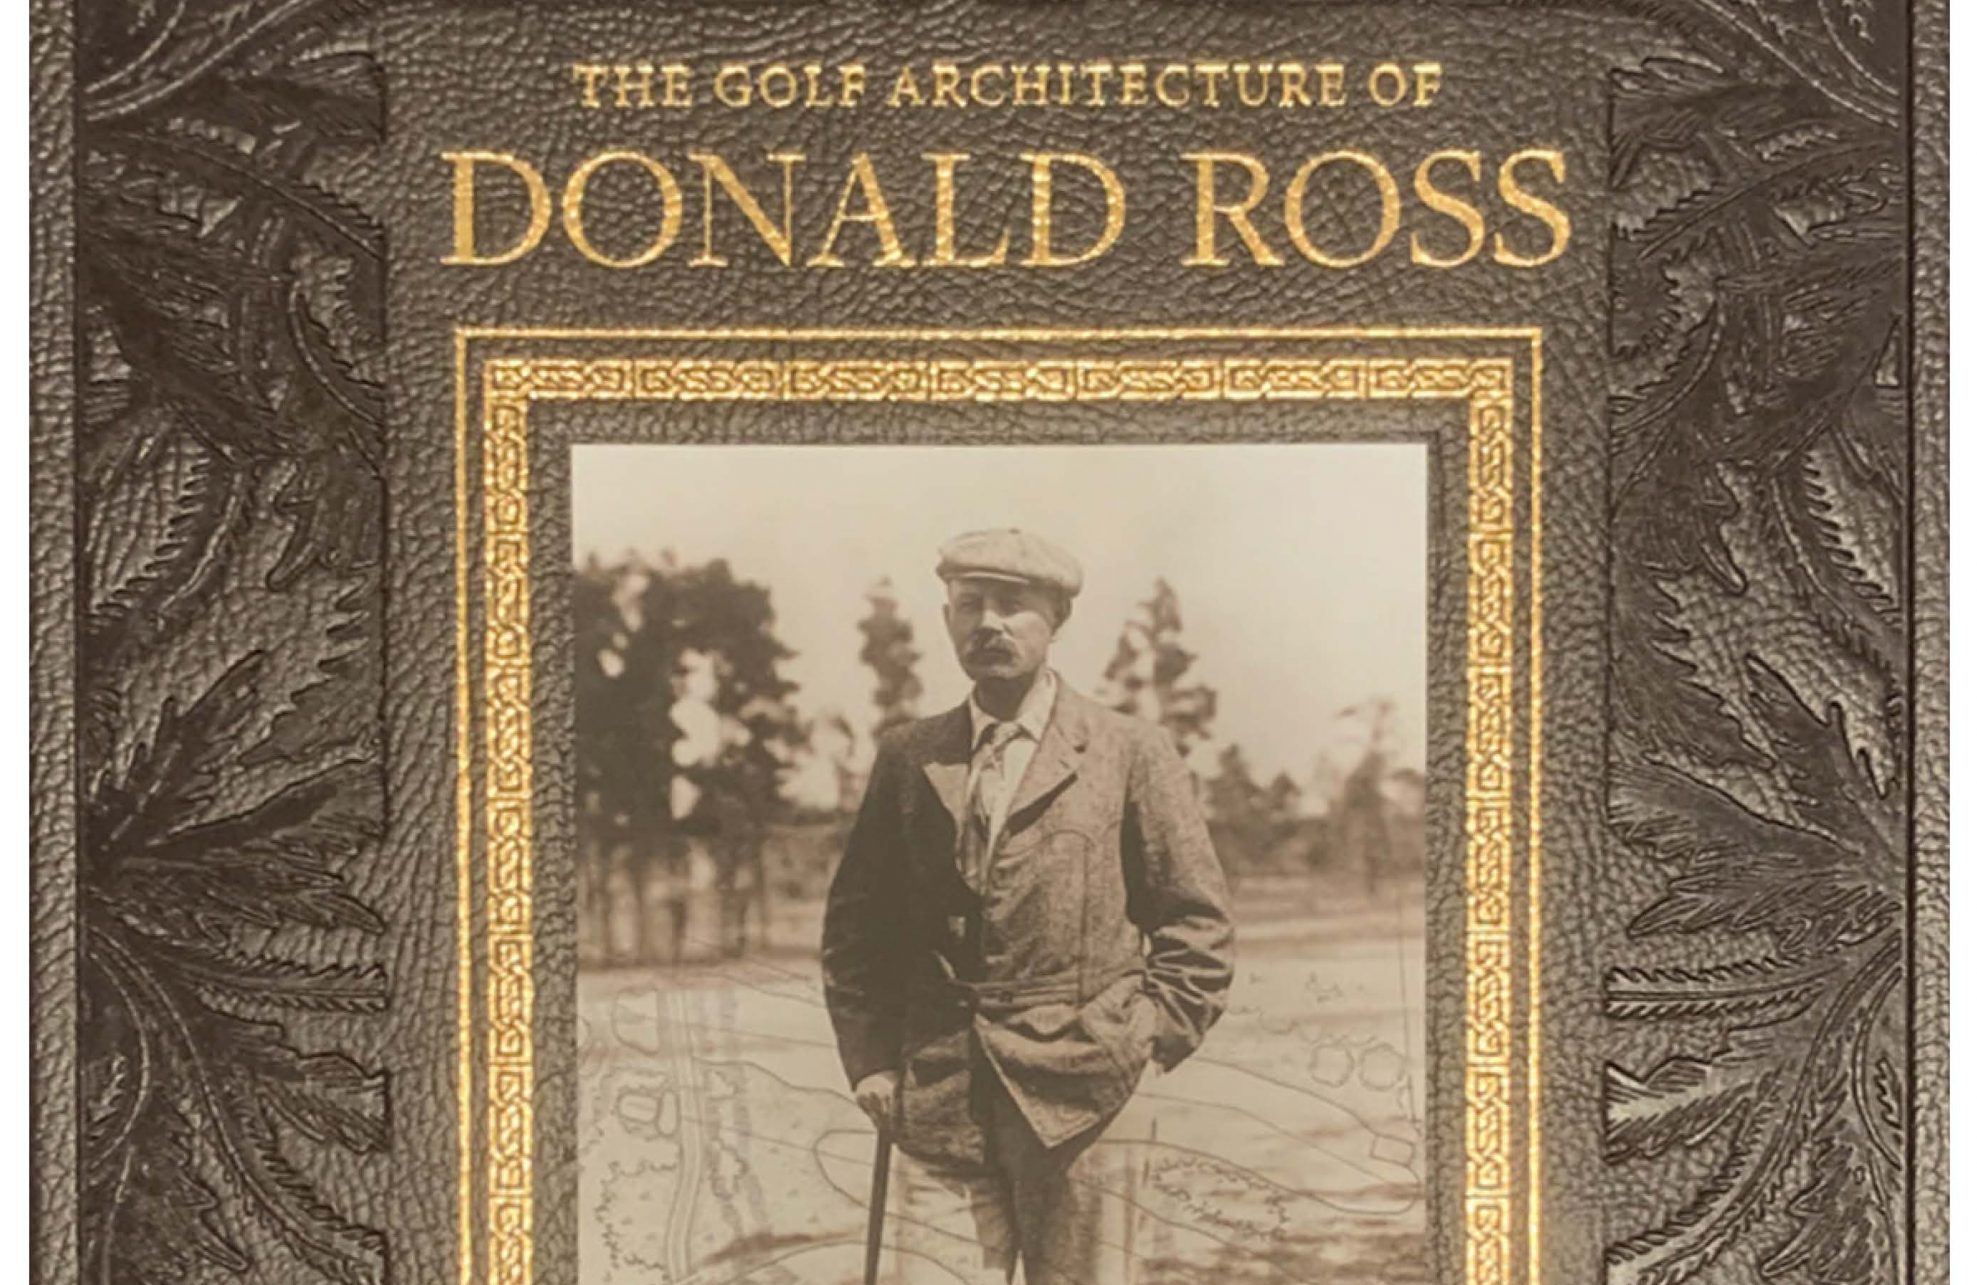 Bradford A. Becken, Jr. and Donald Ross's book